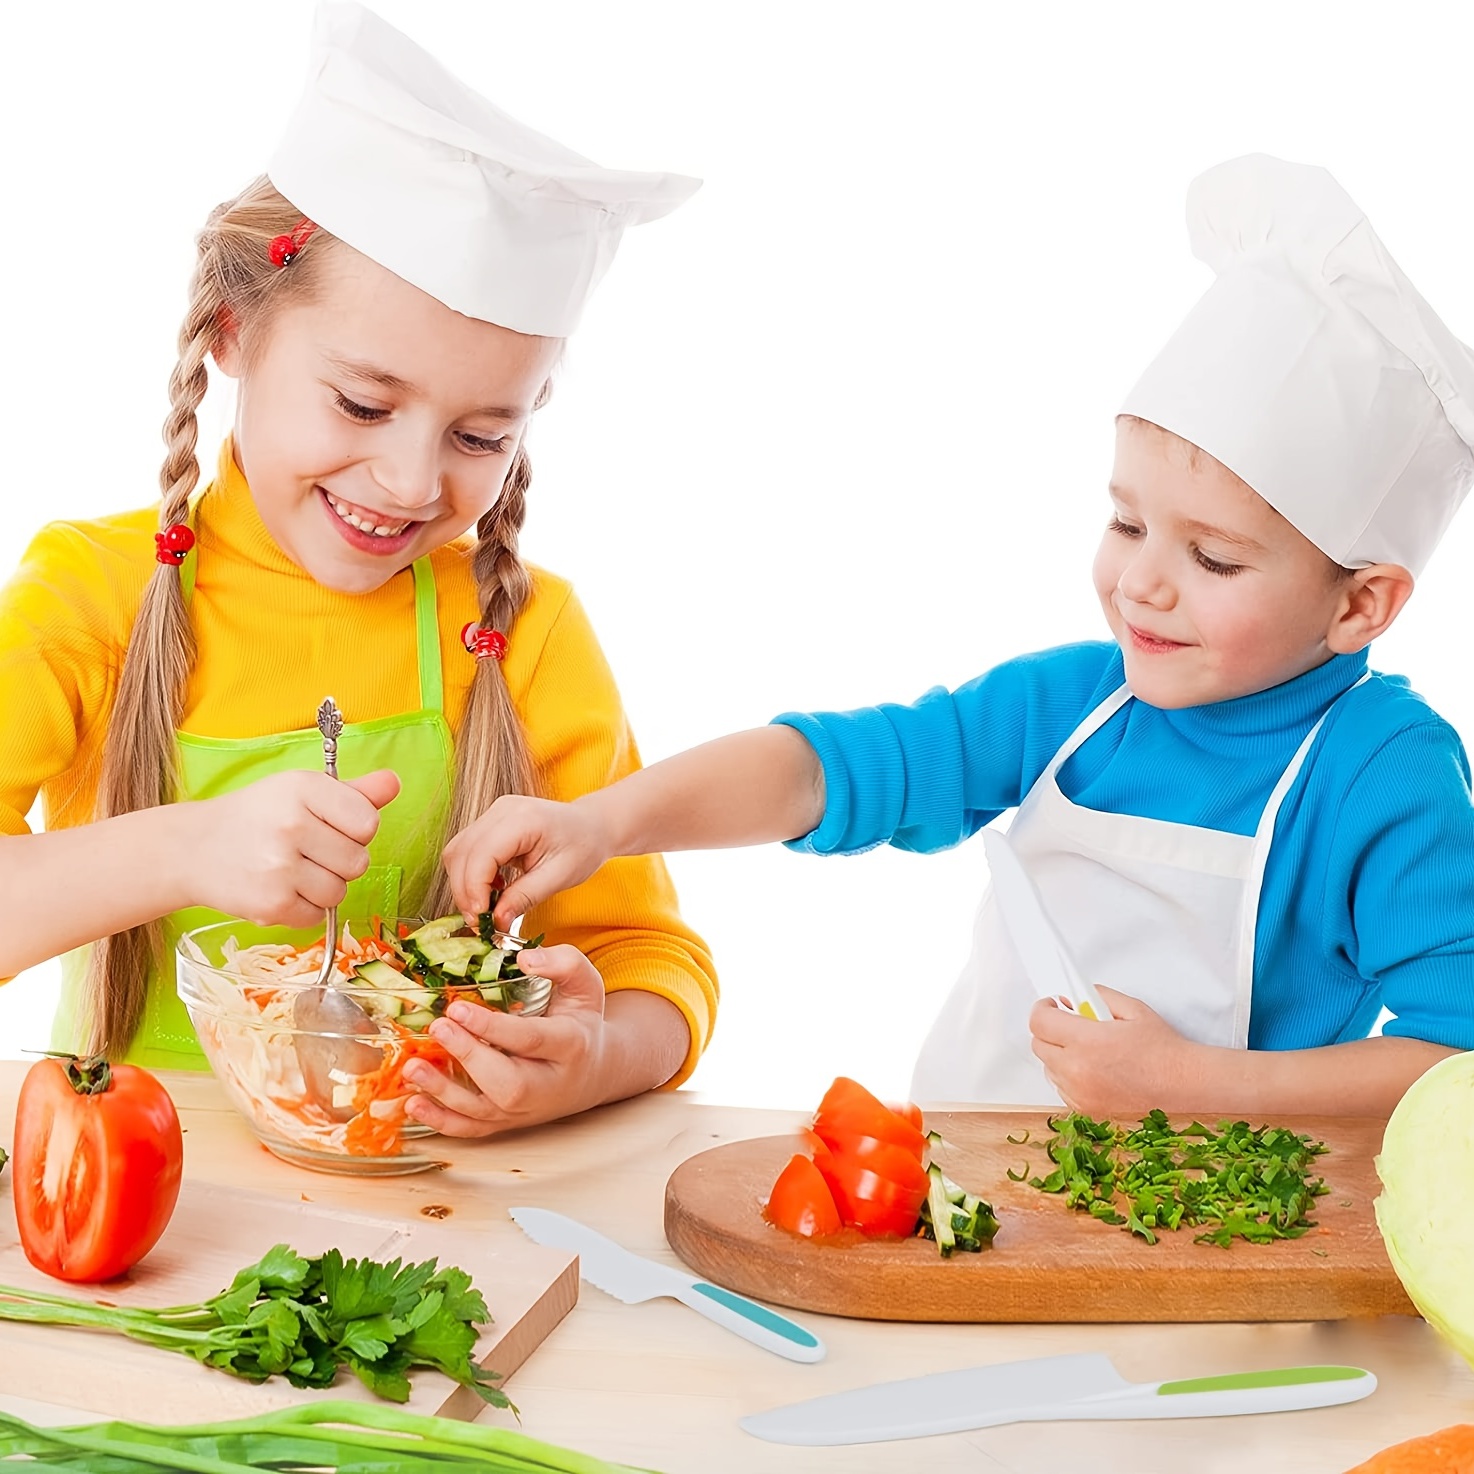 Wooden Kids Kitchen Knives Montessori Knives Toddler Kids Safe Knives For  Cooking Kids Kitchen Knives For